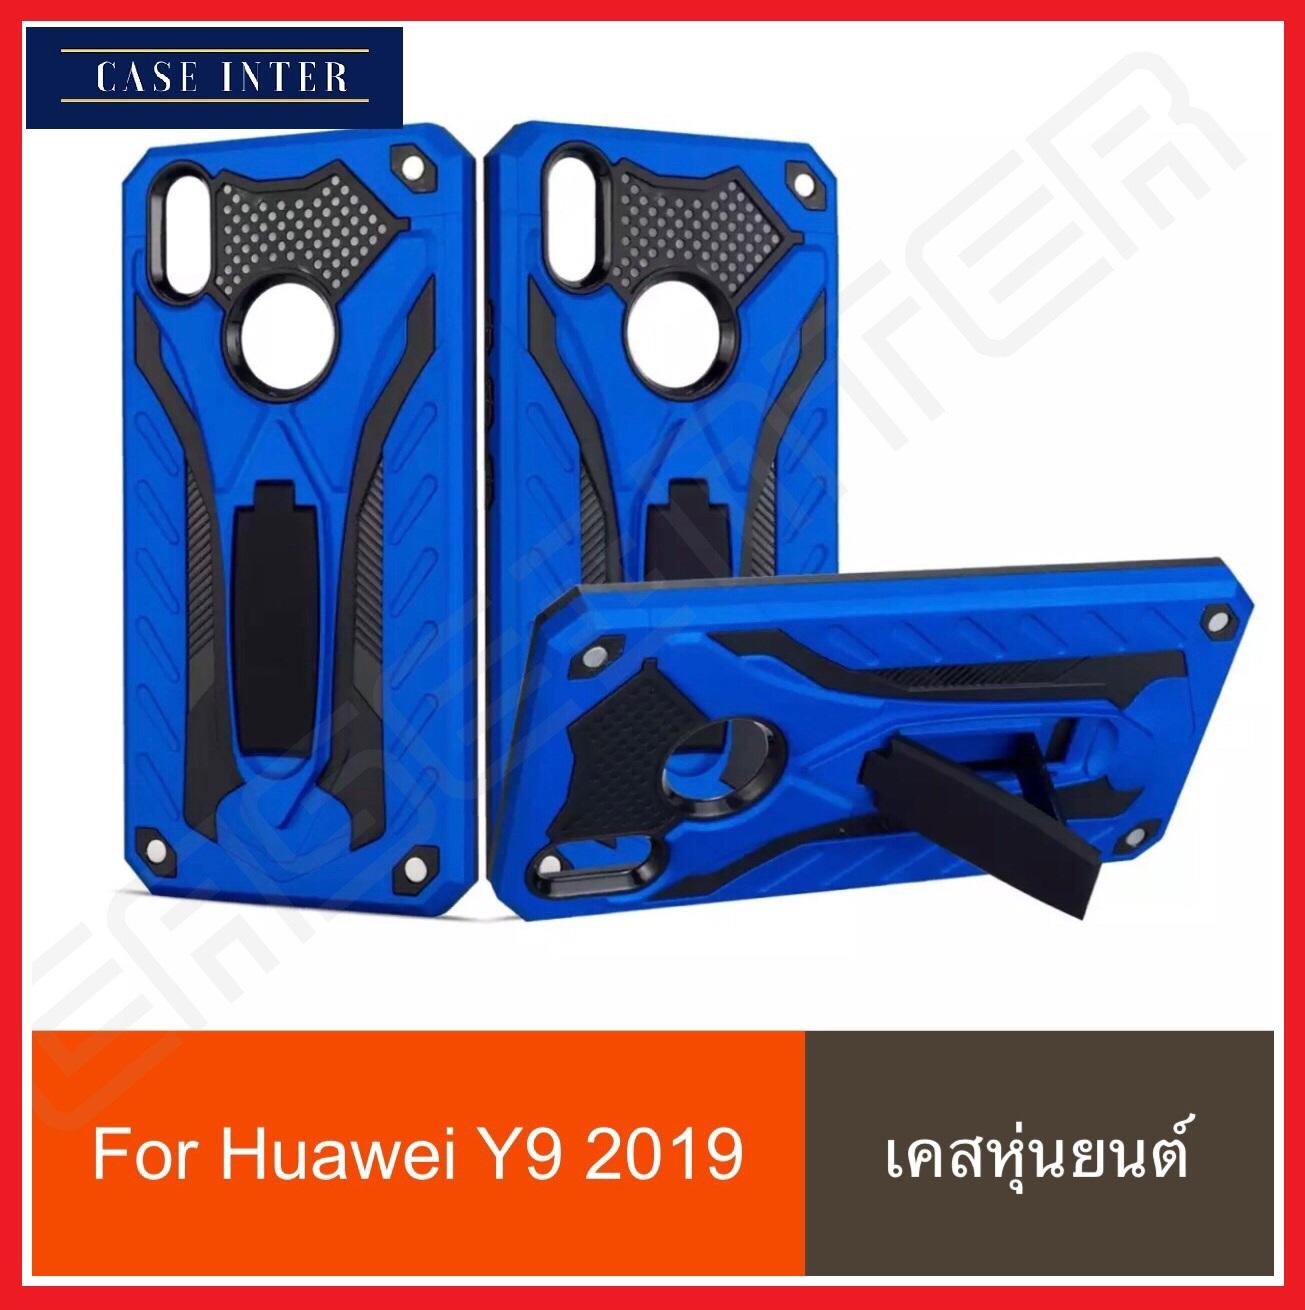 พร้อมส่งทันที !! Case Huawei Y9 2019 Huawei Y9 2019 เคสหัวเว่ย วาย 9 2019 เคสหุ่นยนต์ เคสไฮบริด มีขาตั้ง y92019 เคสกันกระแทก TPU CASE Case Huawei Y9 2019 สินค้าใหม่ สินค้ารับประกันความพอใจ